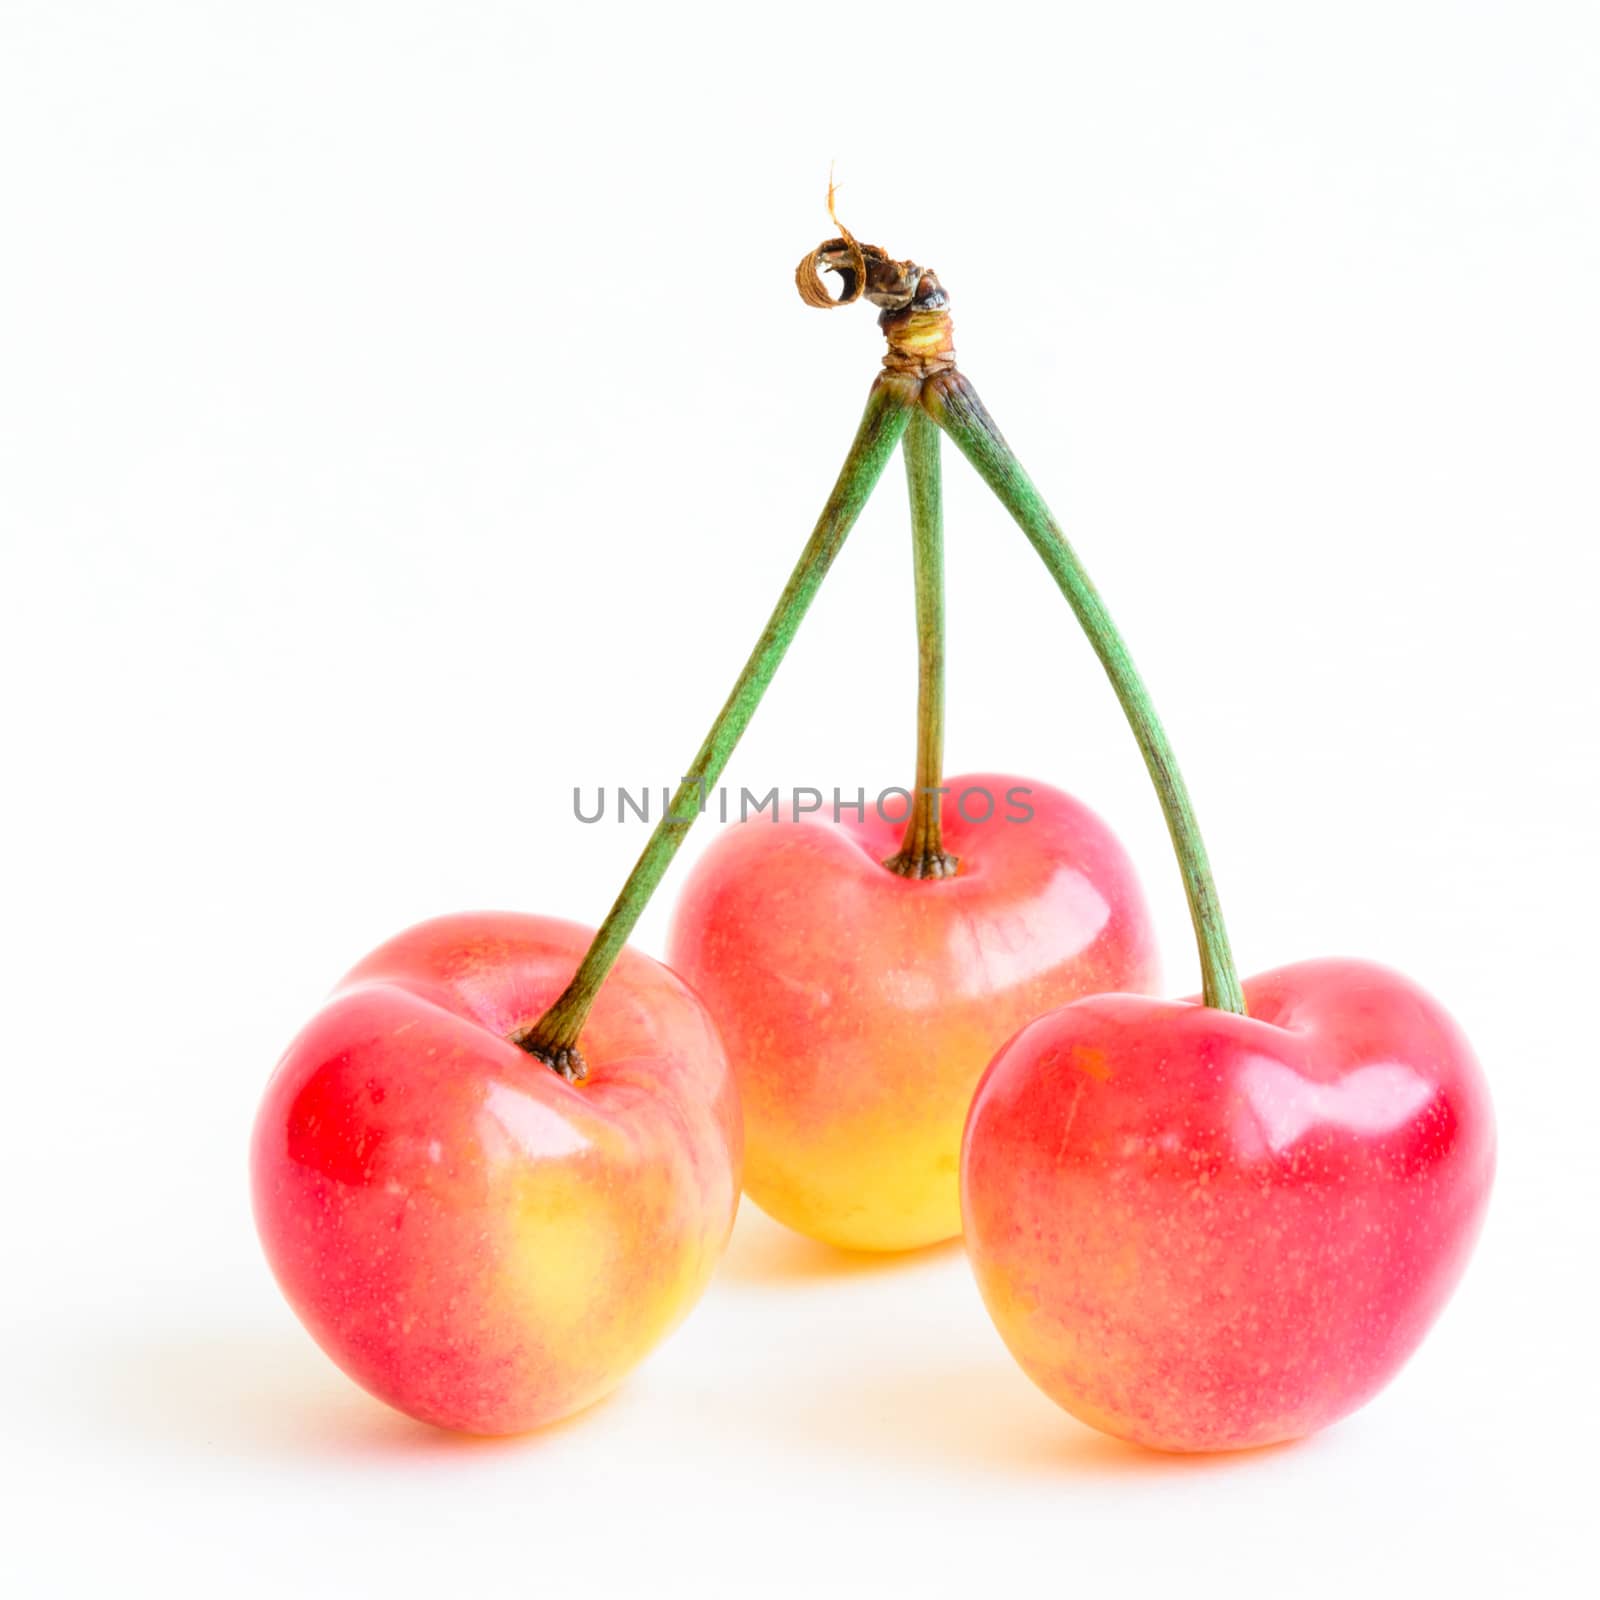 Studio shot three joined stem Rainier cherries isolated on white by trongnguyen